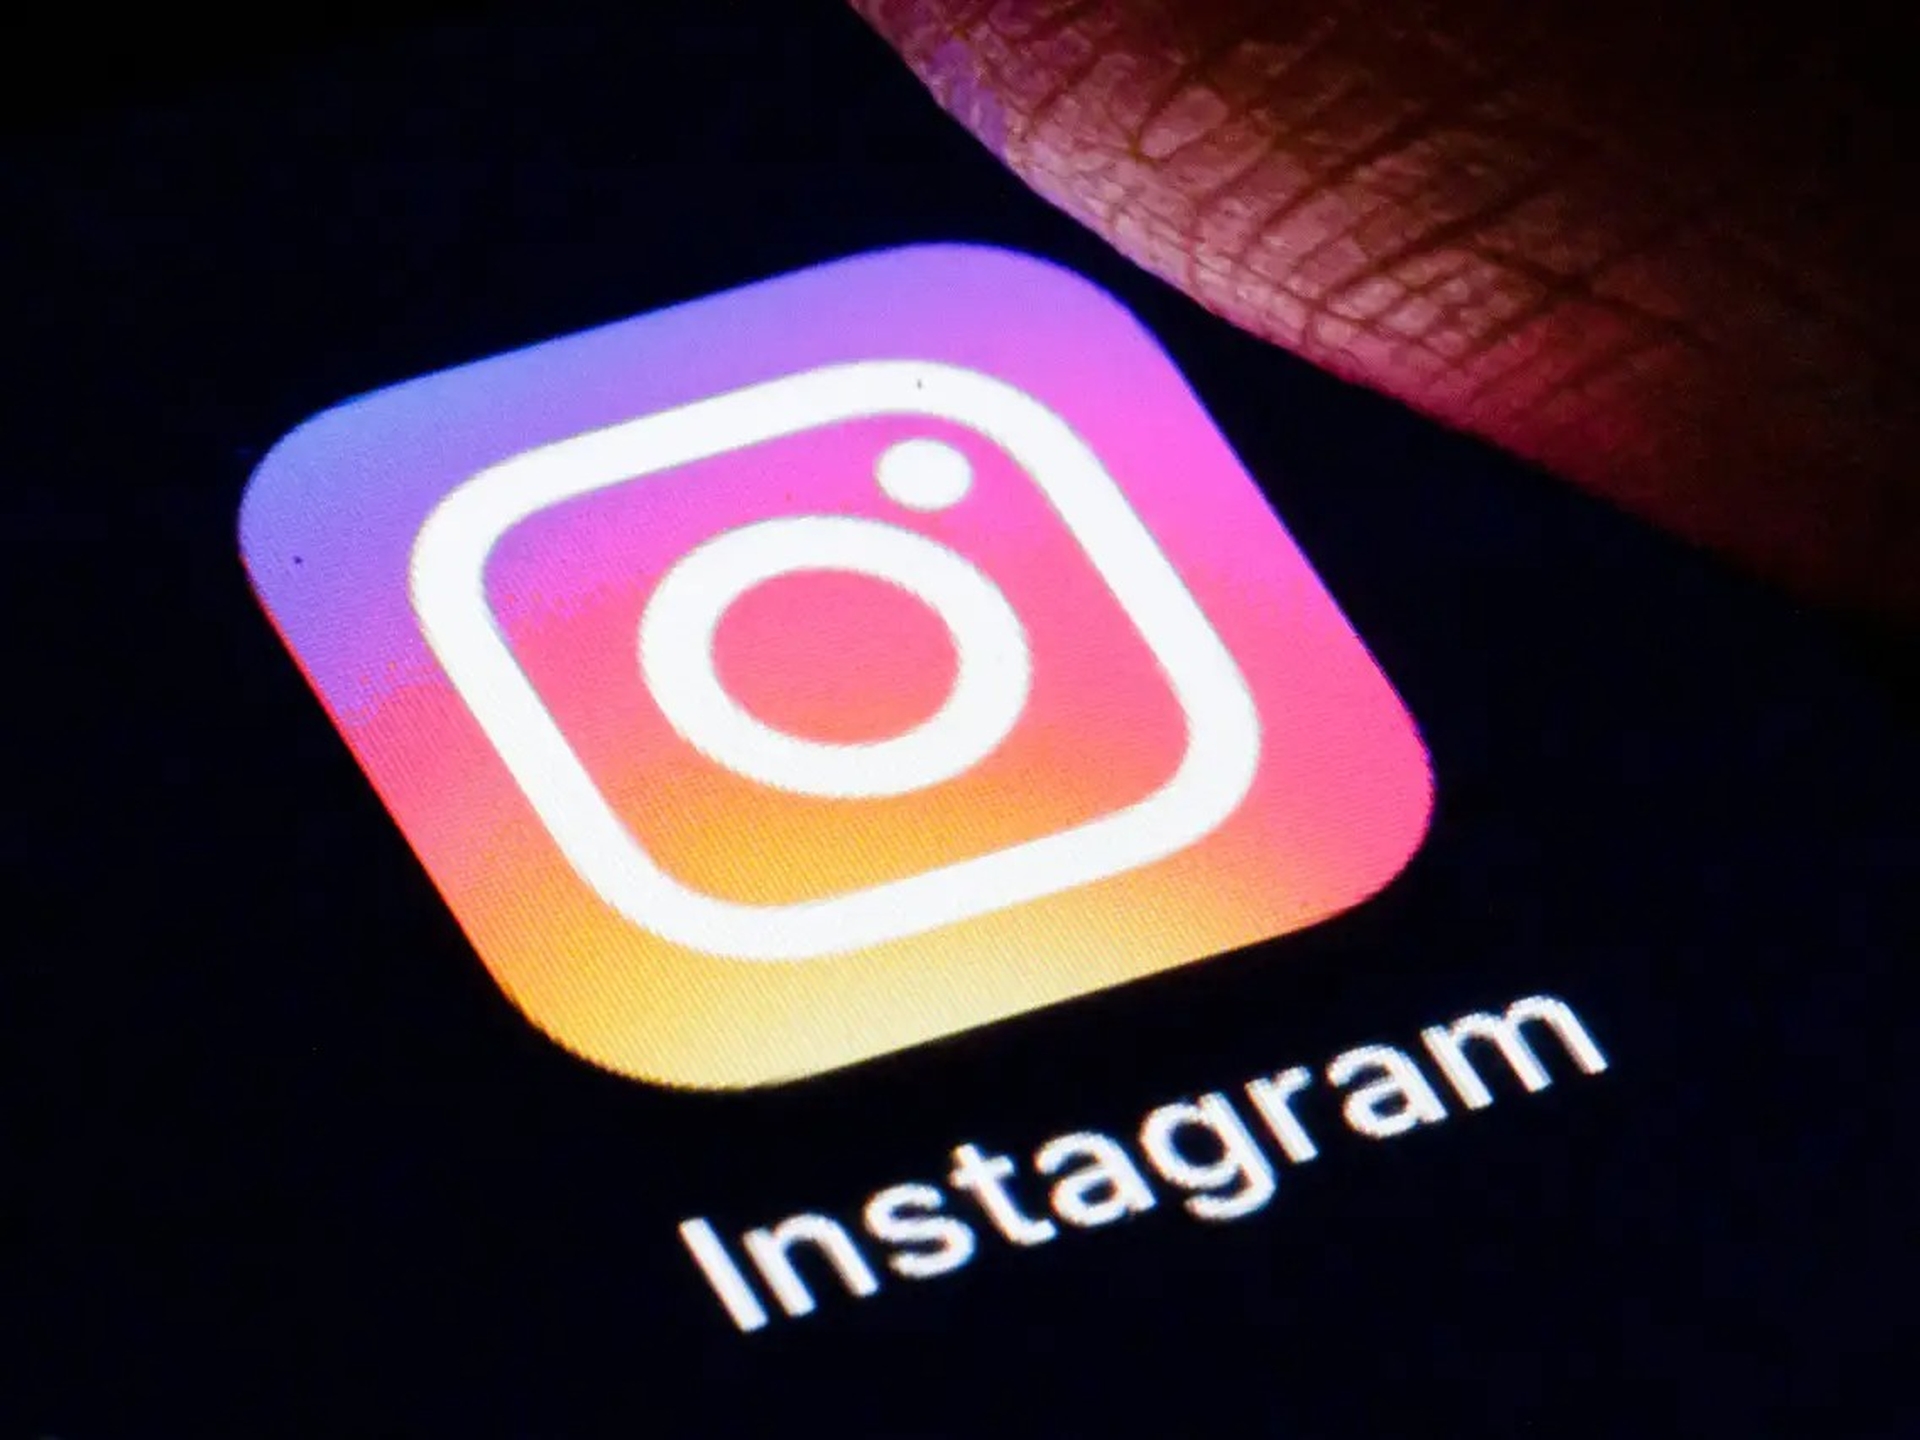 In dit artikel gaan we bespreken wat User Not Found Instagram betekent en wat voor jou de reden achter deze fout kan zijn.